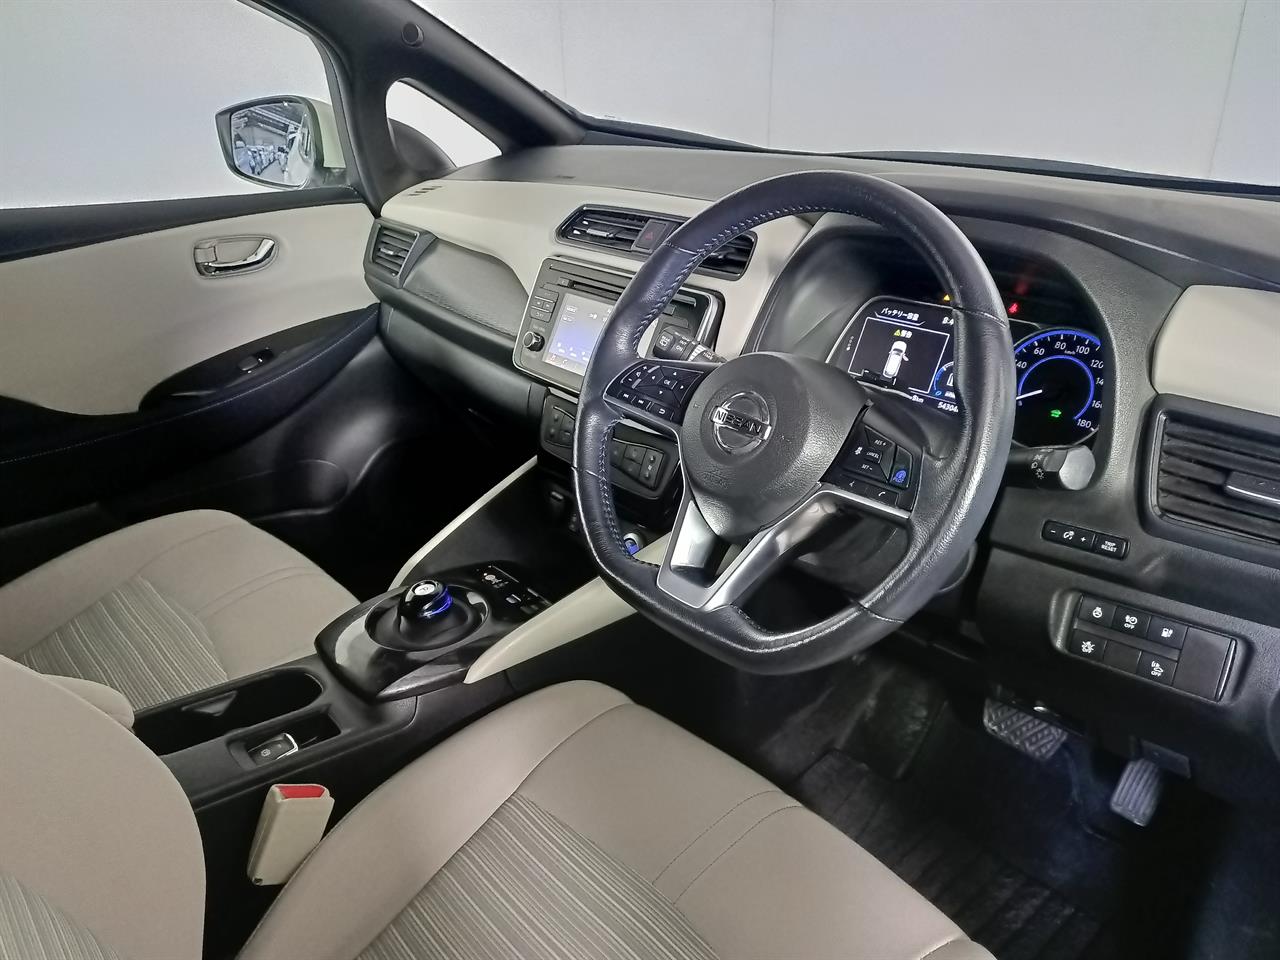 2018 Nissan Leaf New Shape 